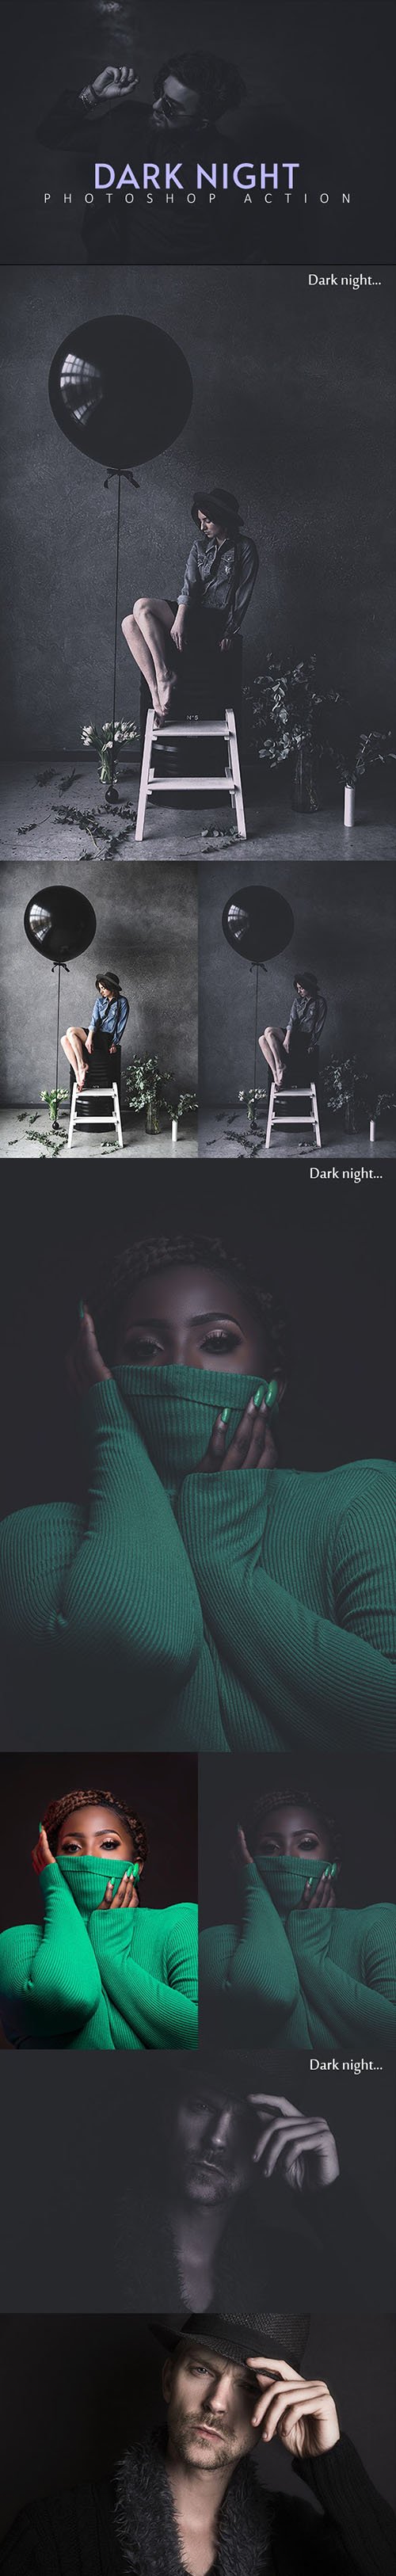 Dark Night Photoshop Action 25606778